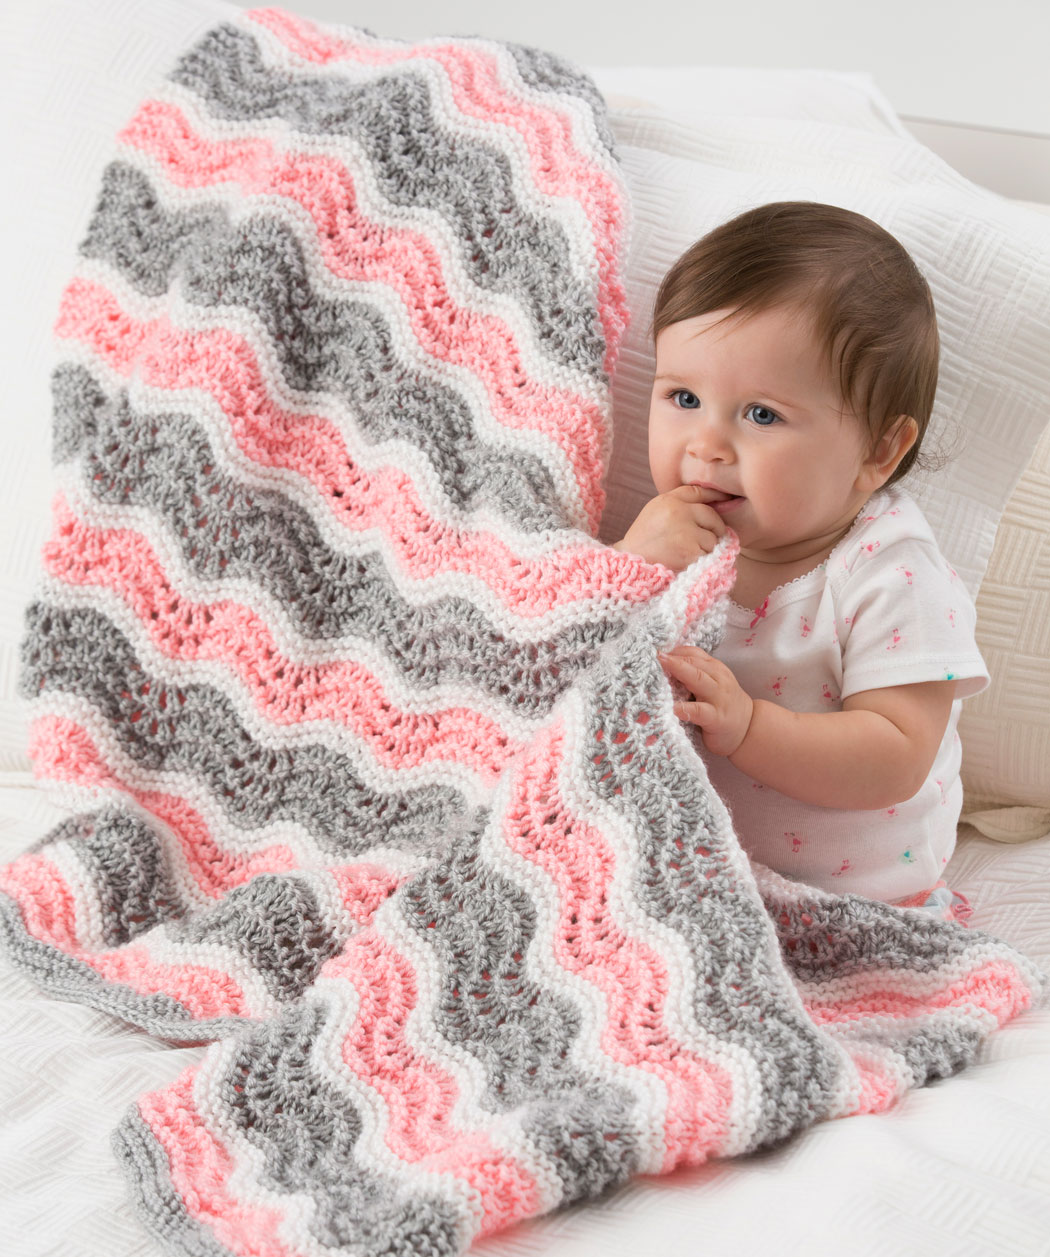 baby knitting patterns 1 xsgsyhv